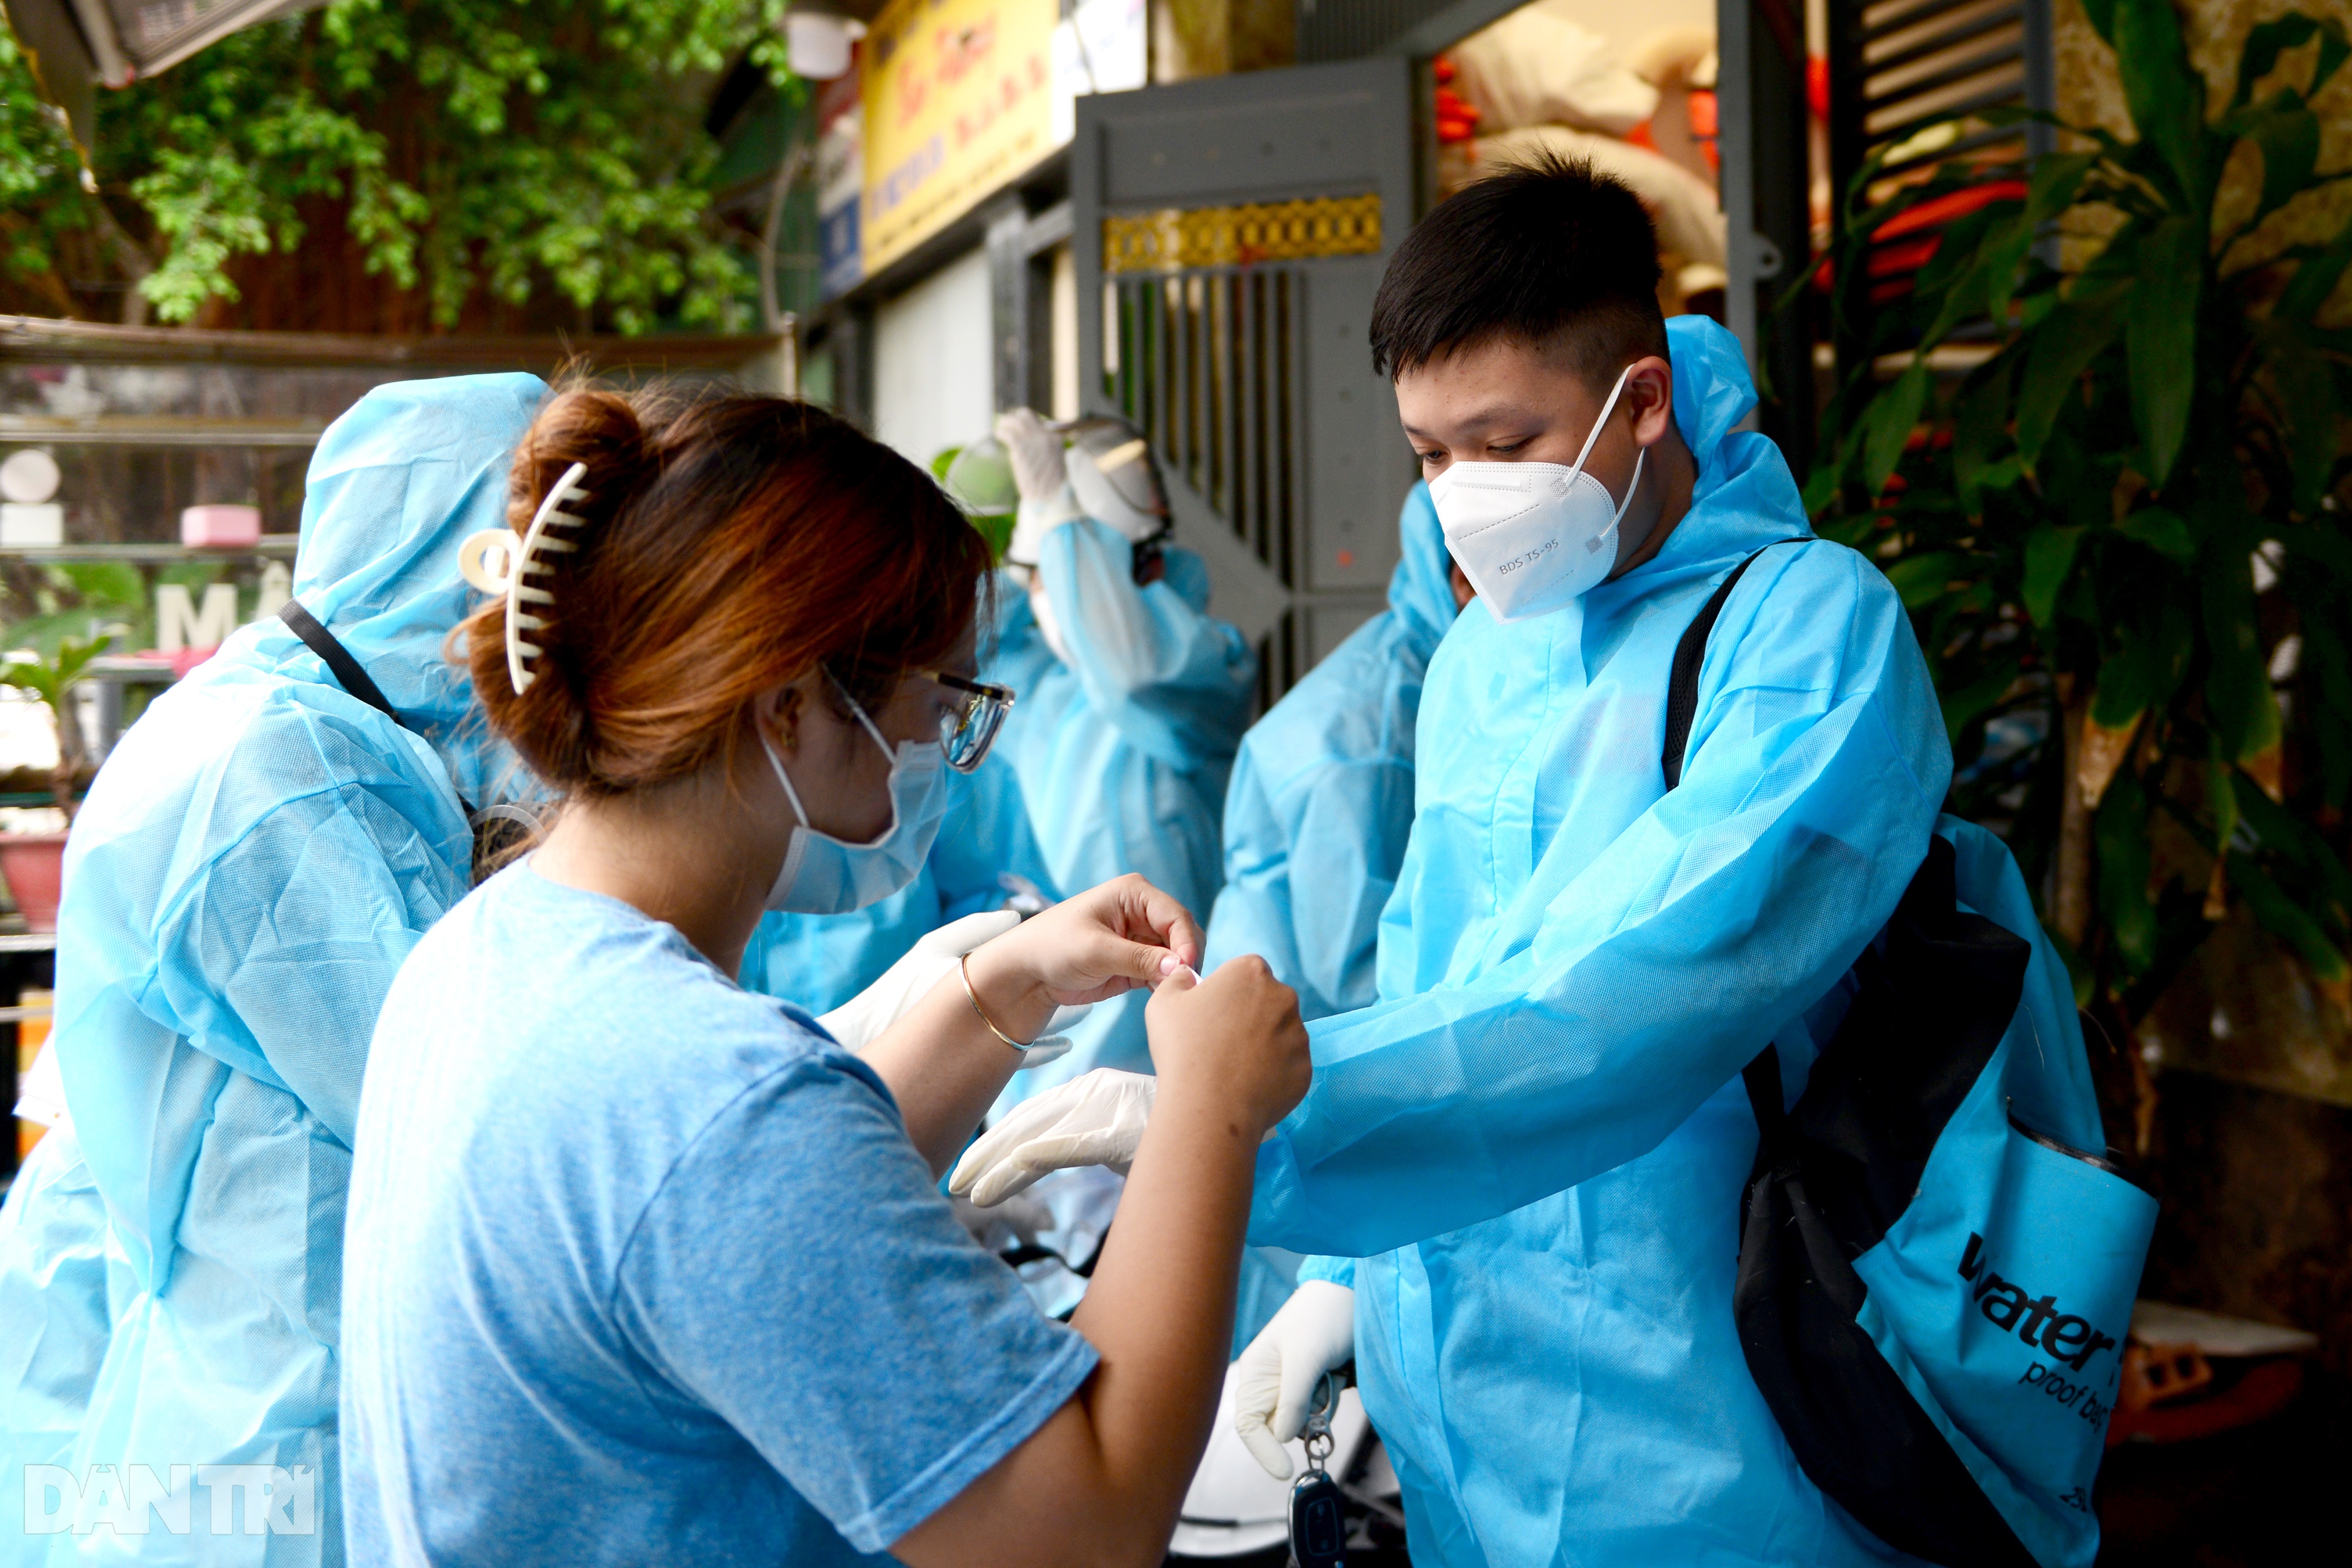 Thiếu niên 15 tuổi tình nguyện tham gia đội khử khuẩn đường phố ở Sài Gòn - 4